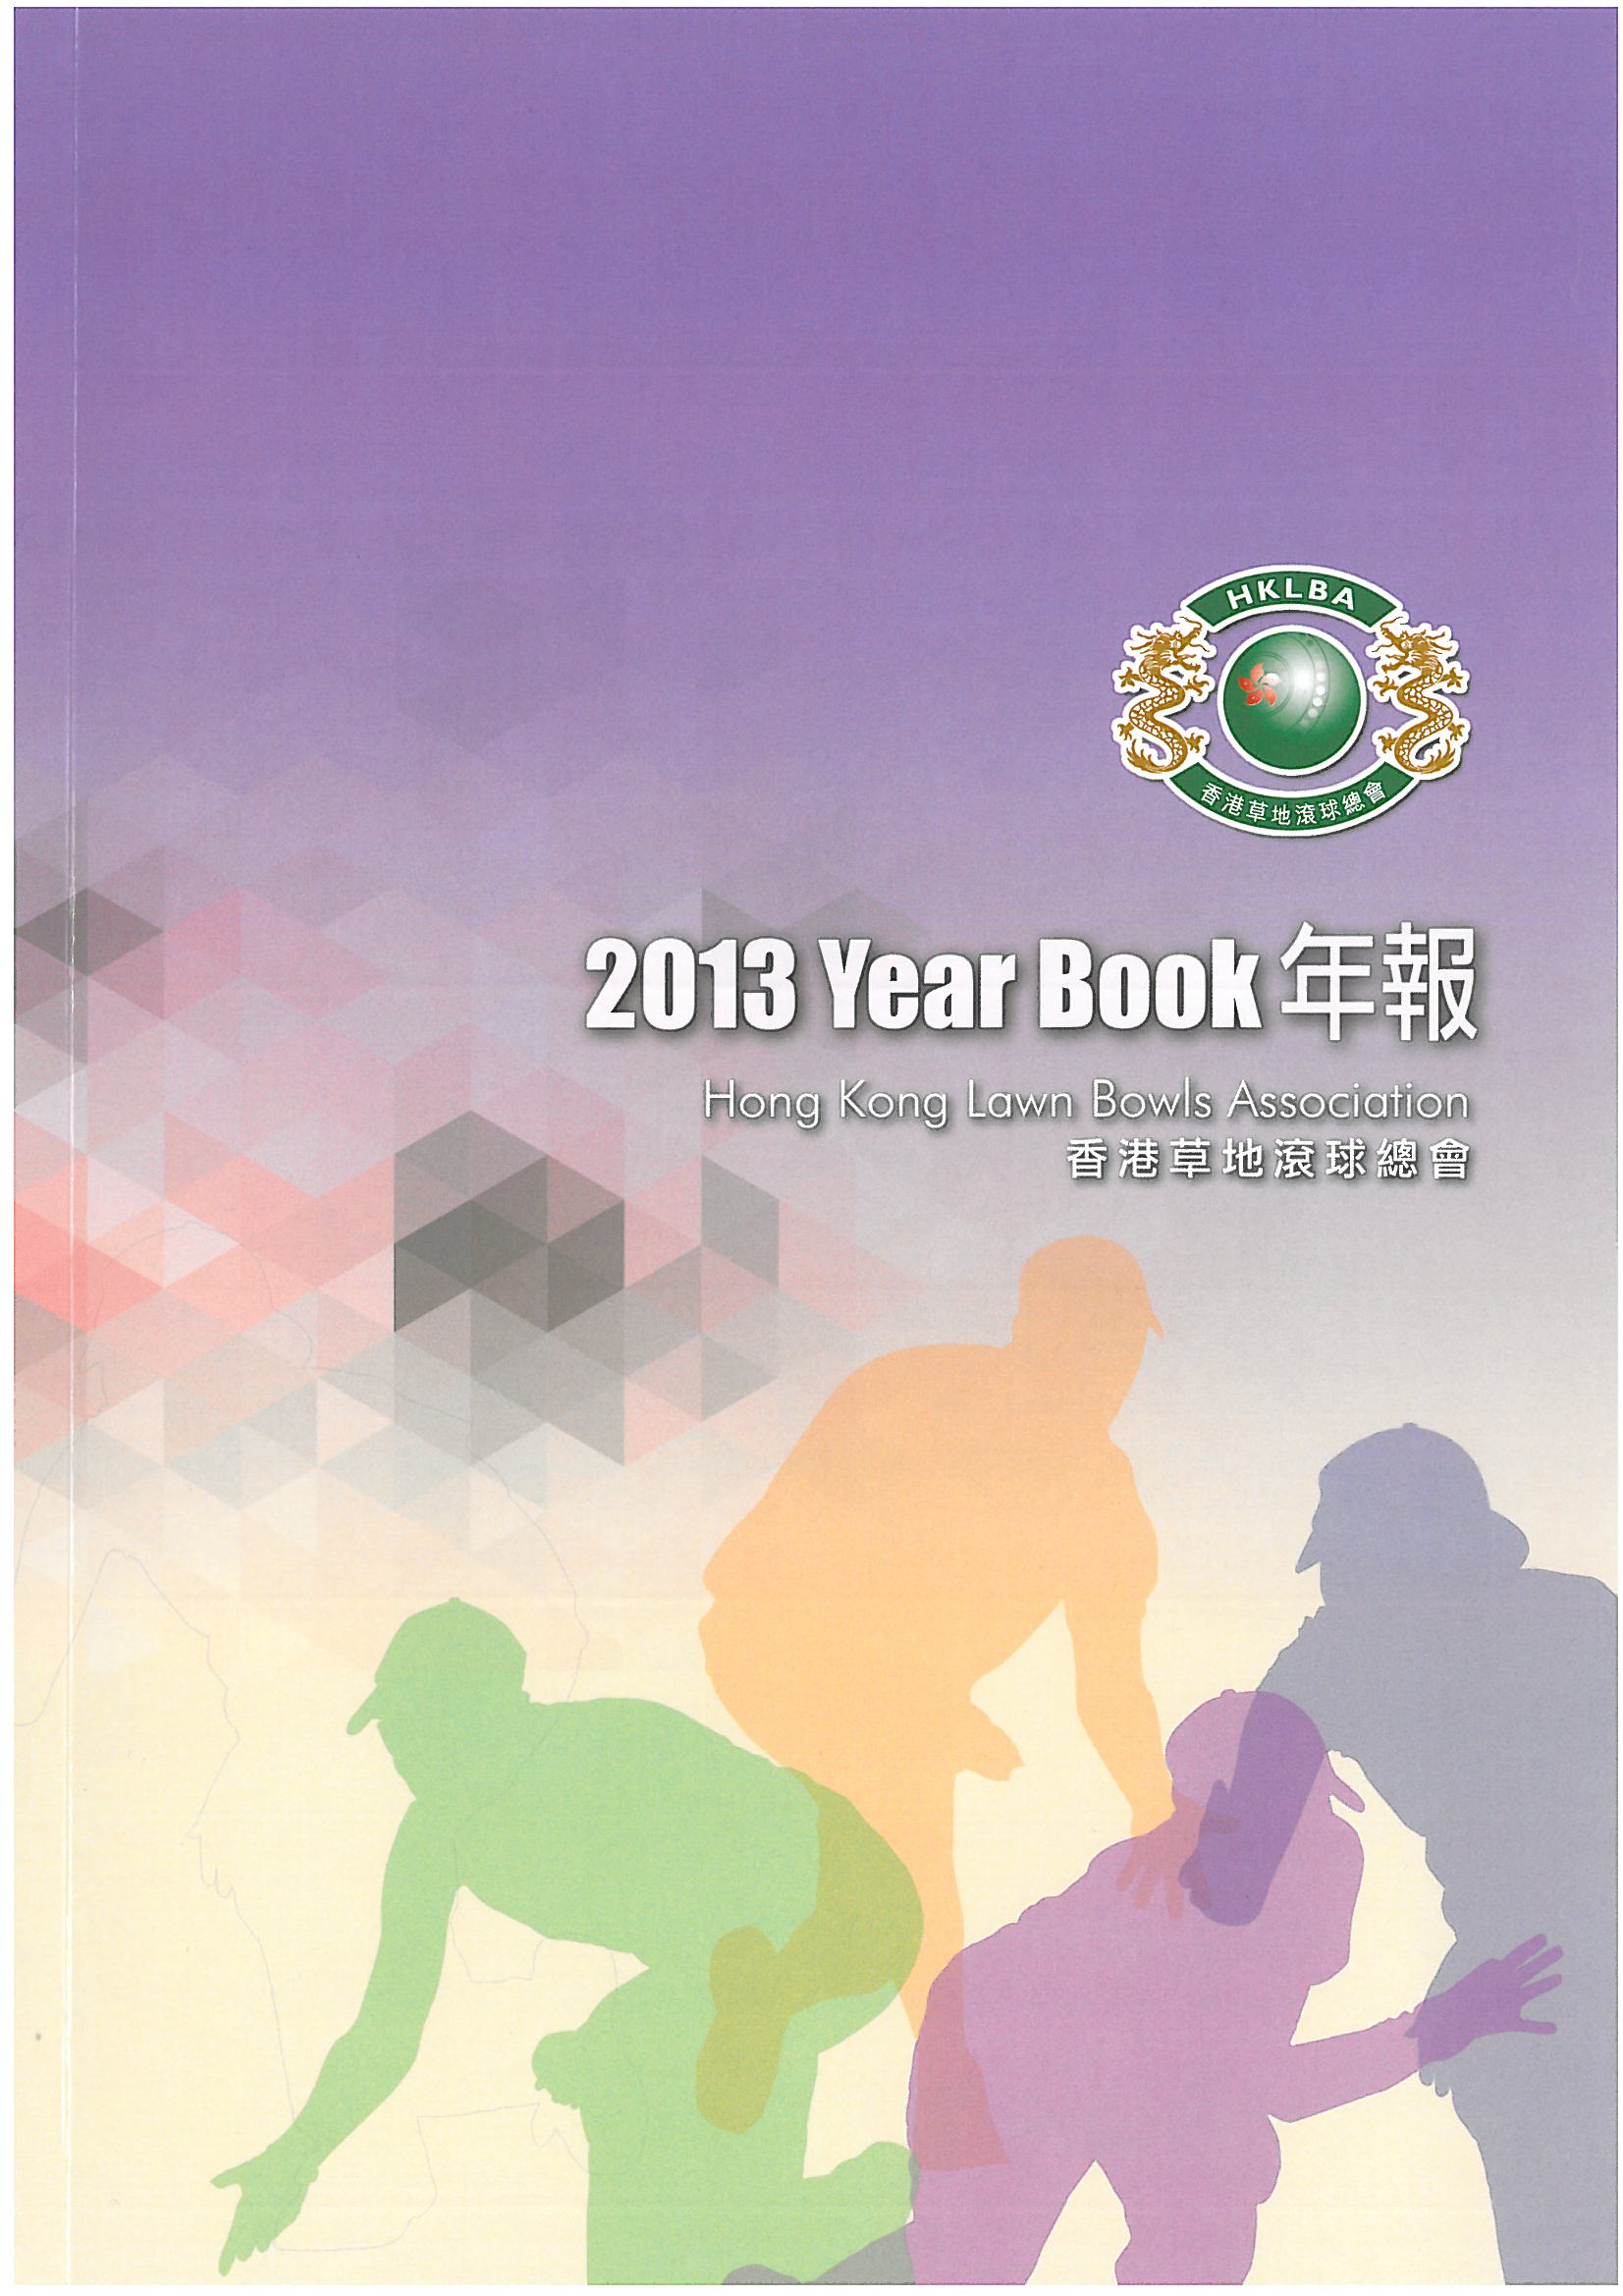 HKLBA year book 2013